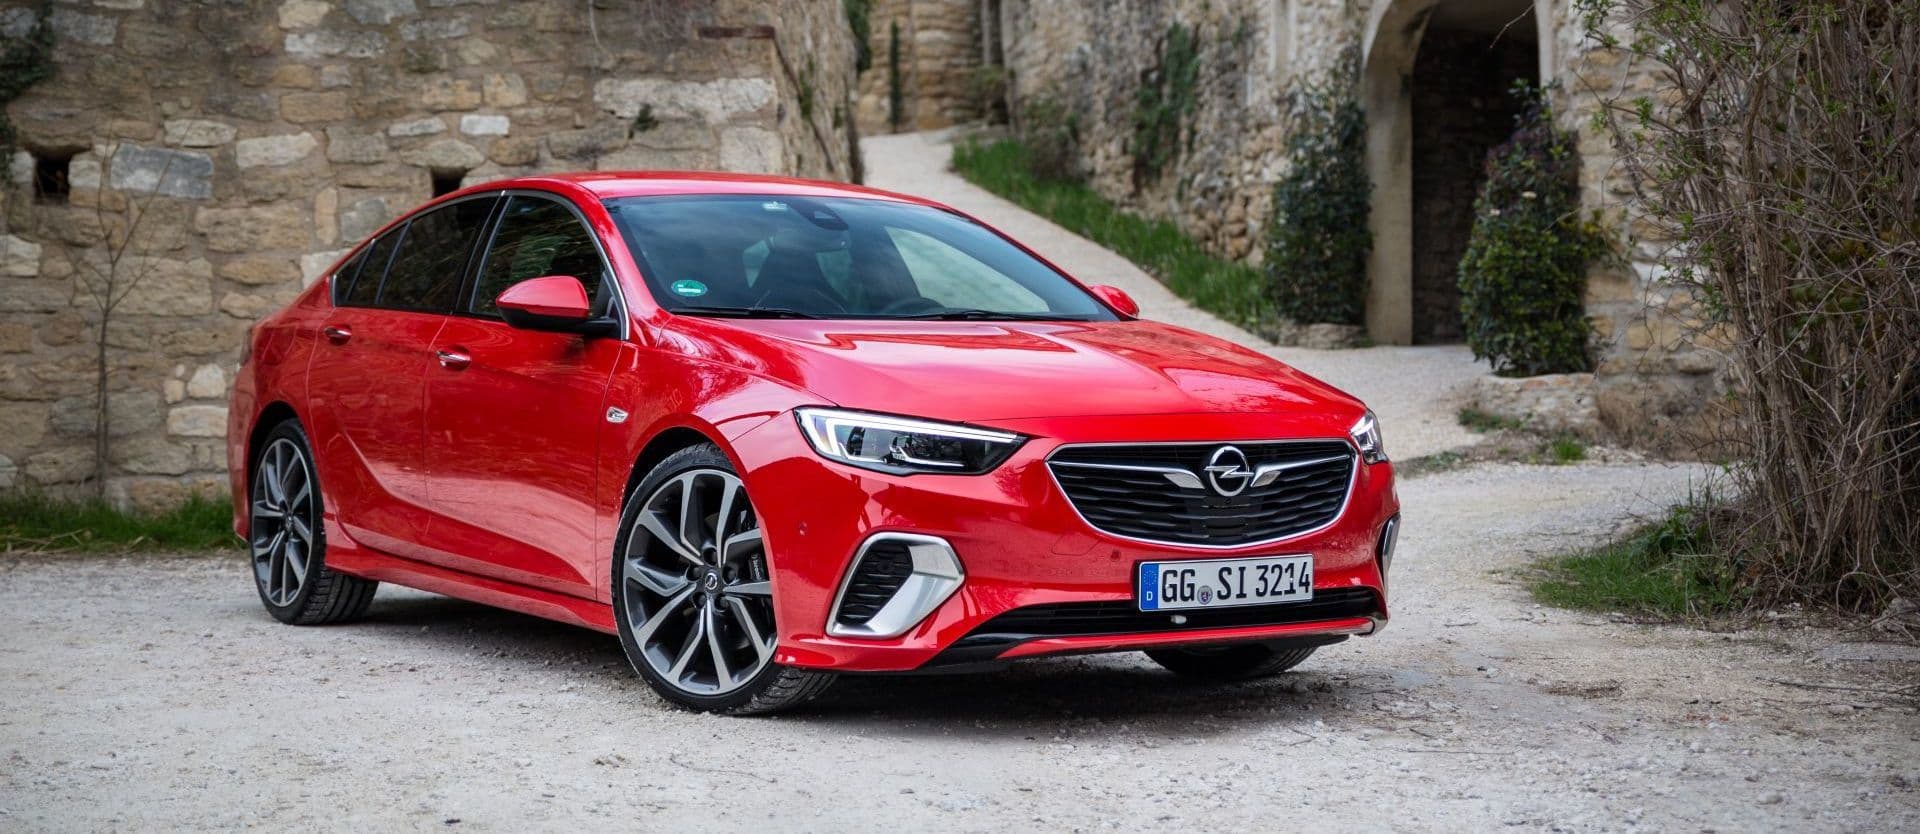 Opel Insignia GSi, a prueba: diversión y precisión para el retorno